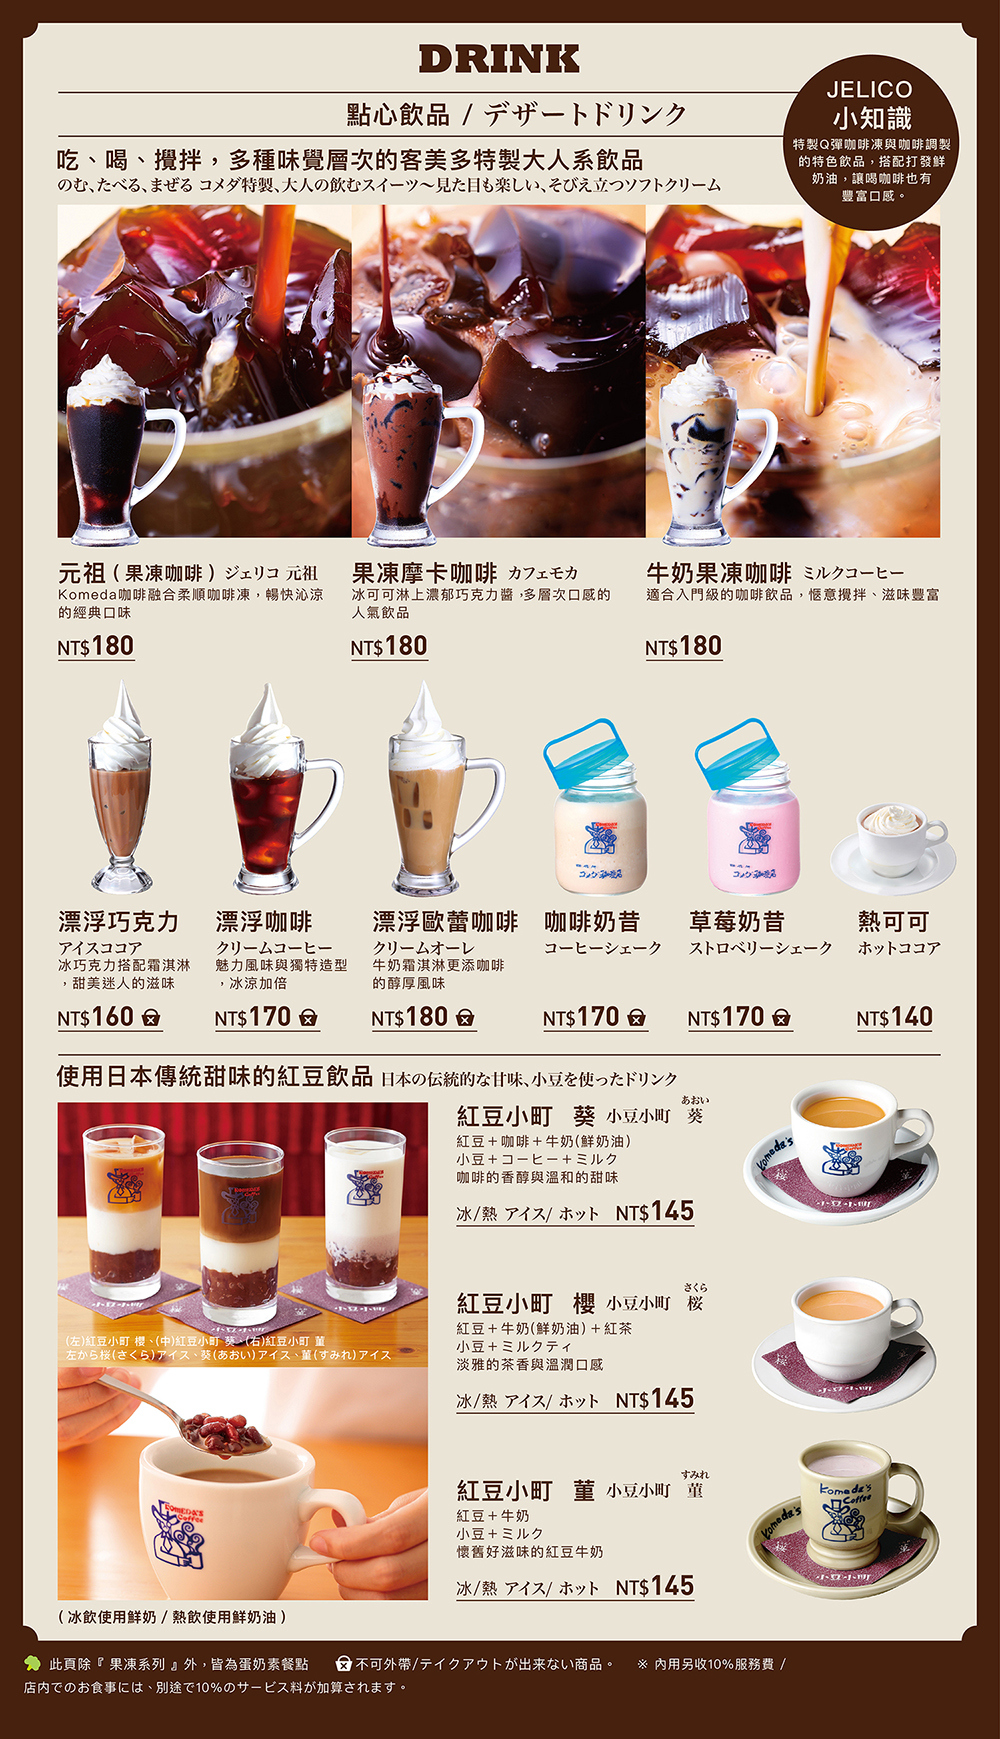 【松江南京美食推薦】客美多咖啡Komeda’s Coffee 名古屋式早餐點咖啡送吐司超划算